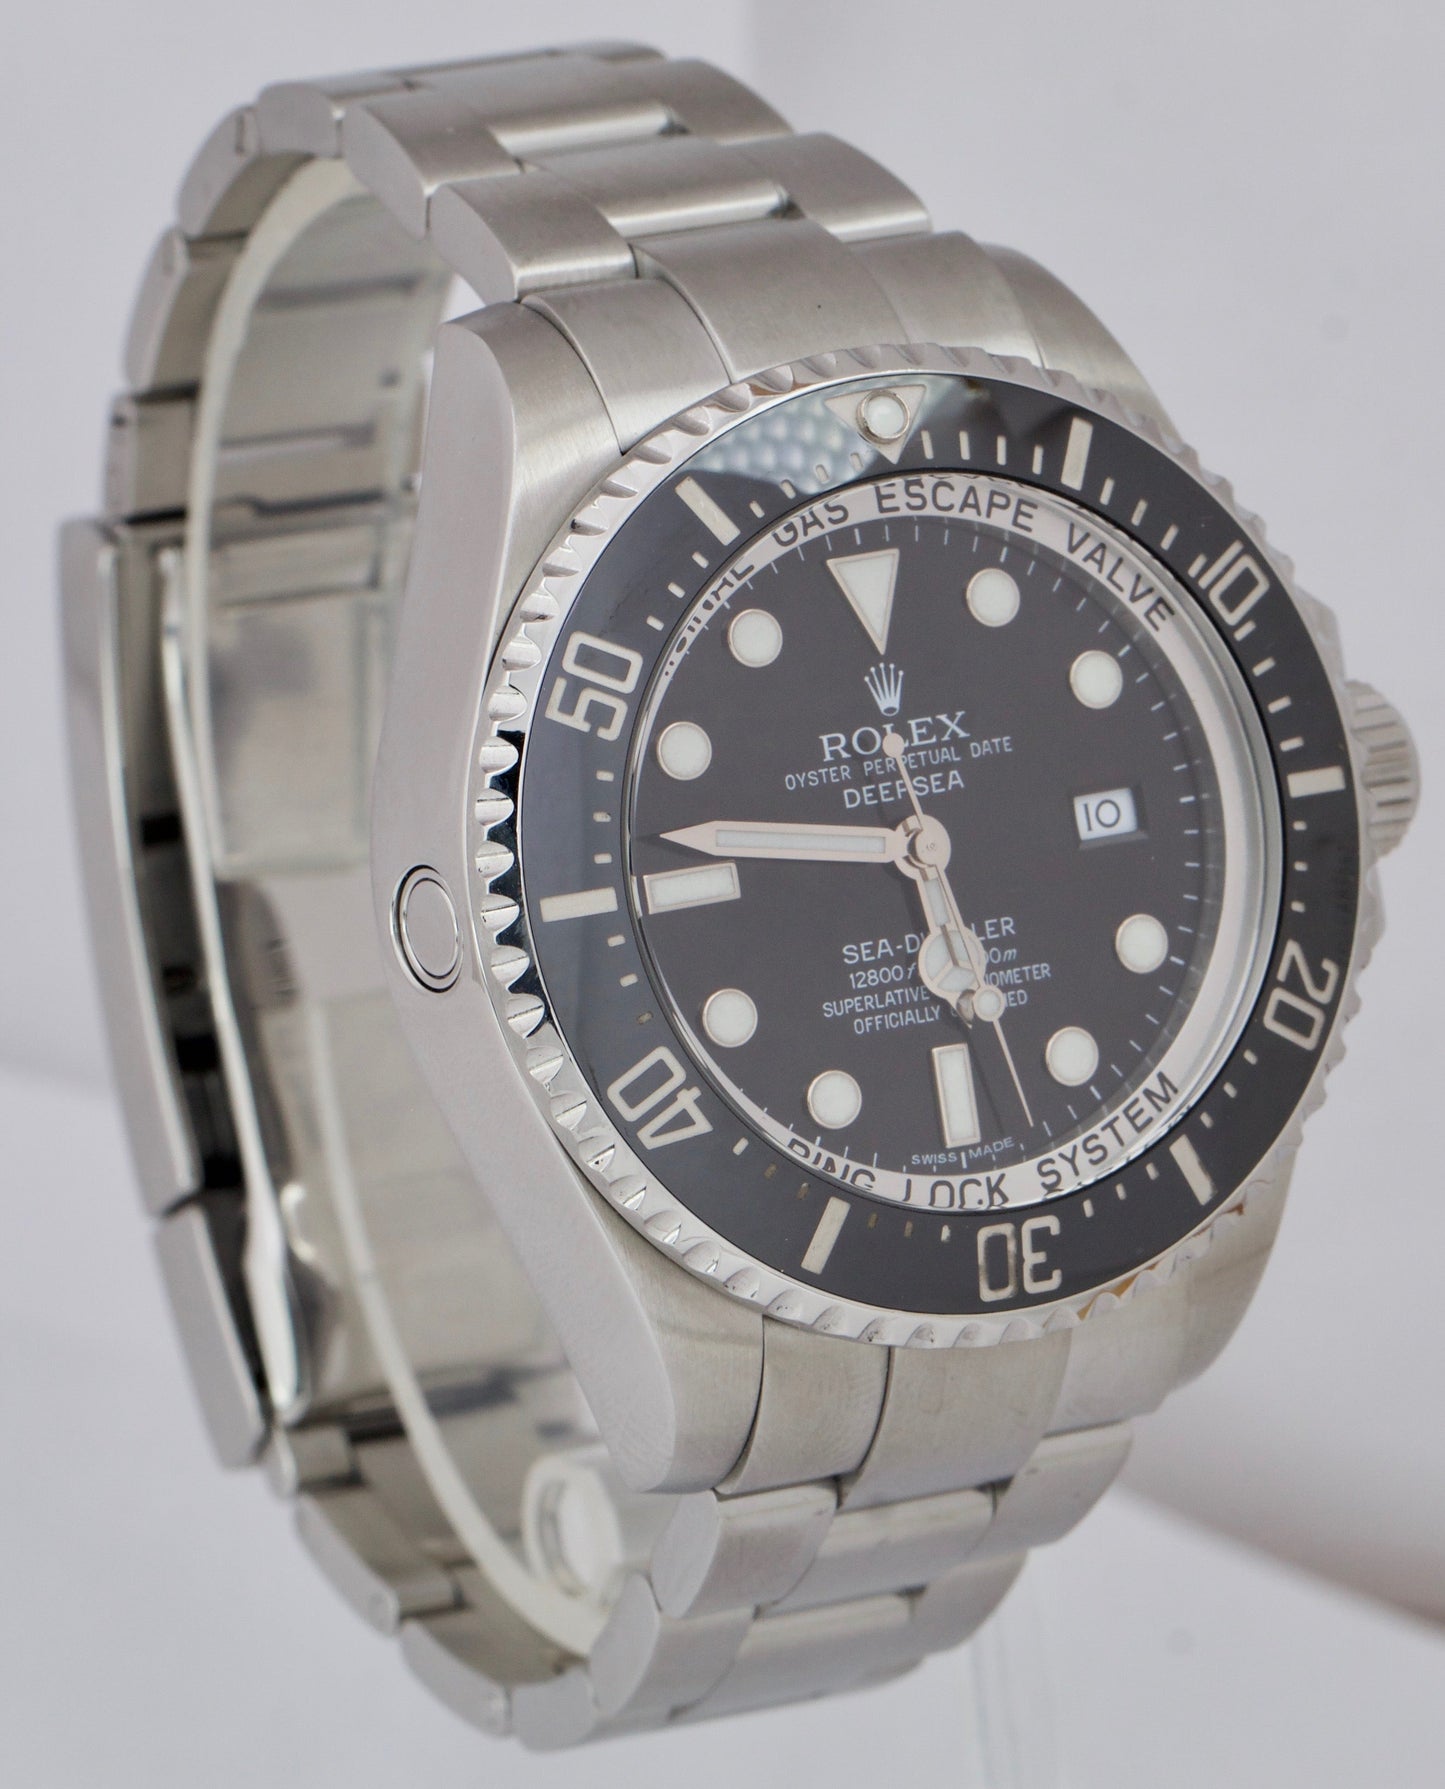 2012 Rolex Sea-Dweller Deepsea Stainless Steel 44mm Black Date Dive Watch 116660